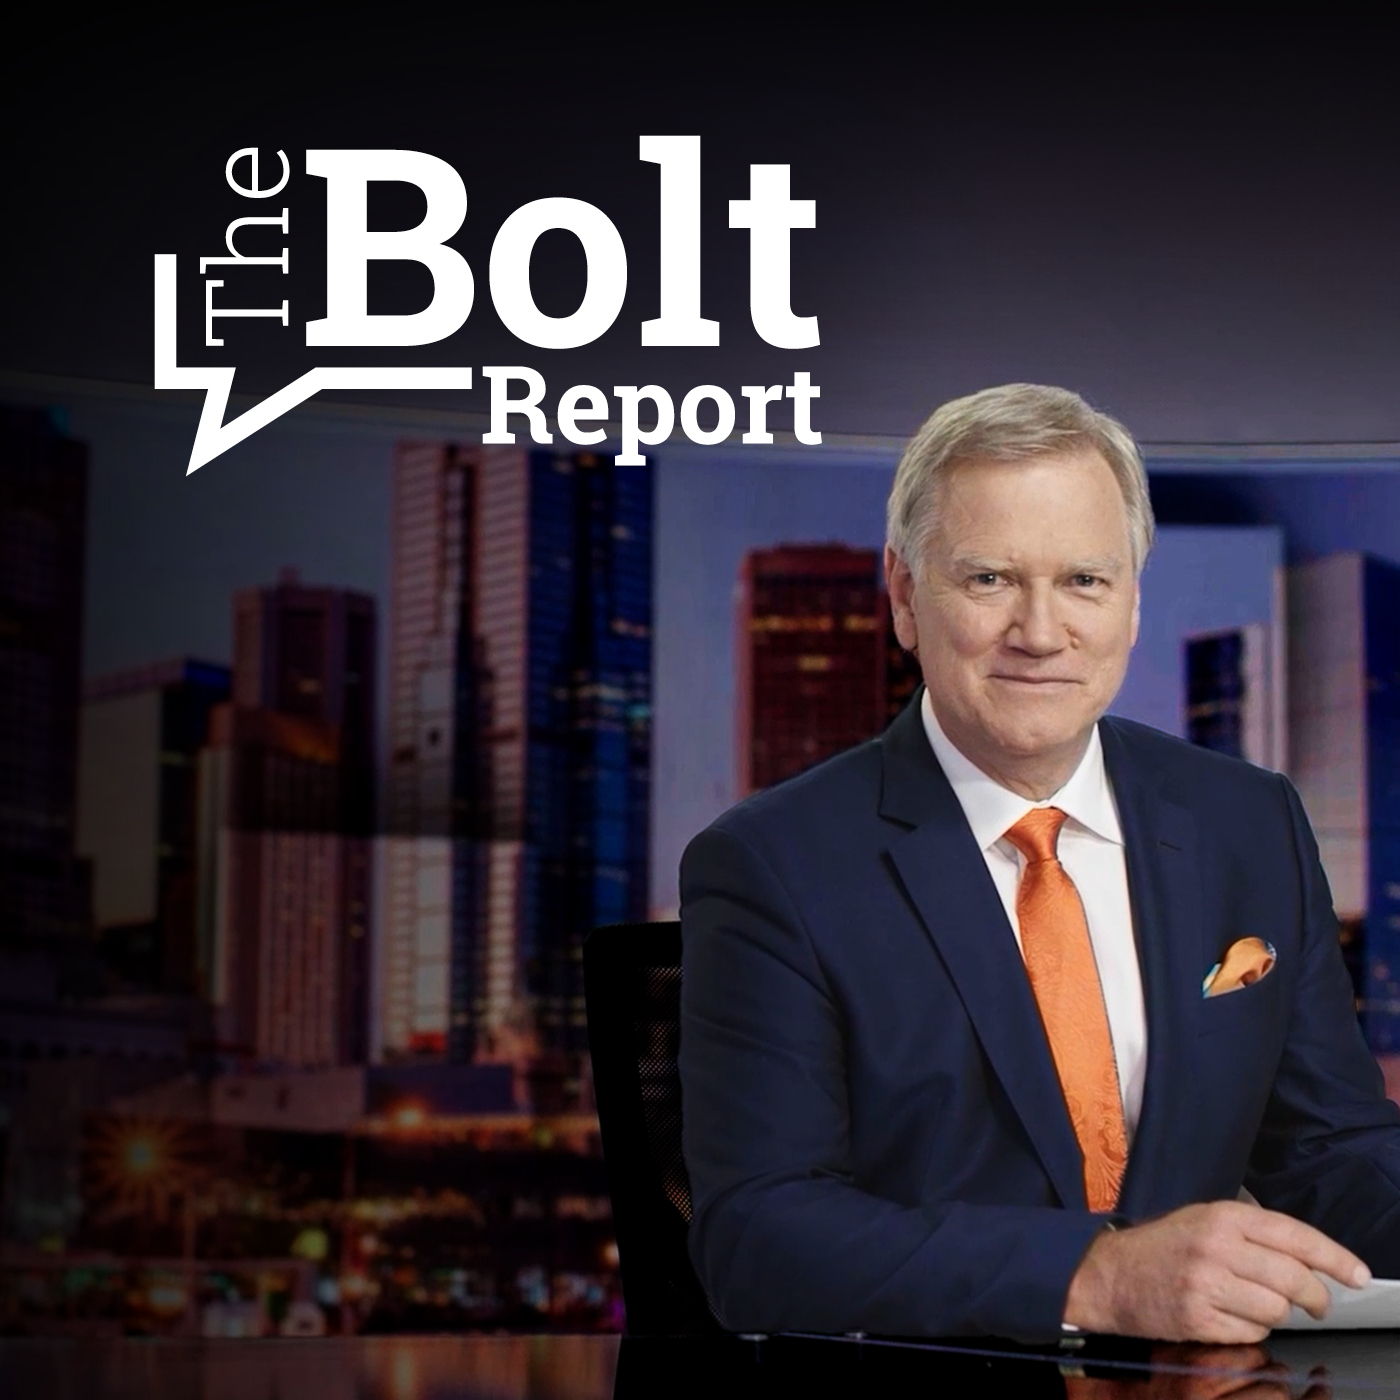 The Bolt Report | 25 April